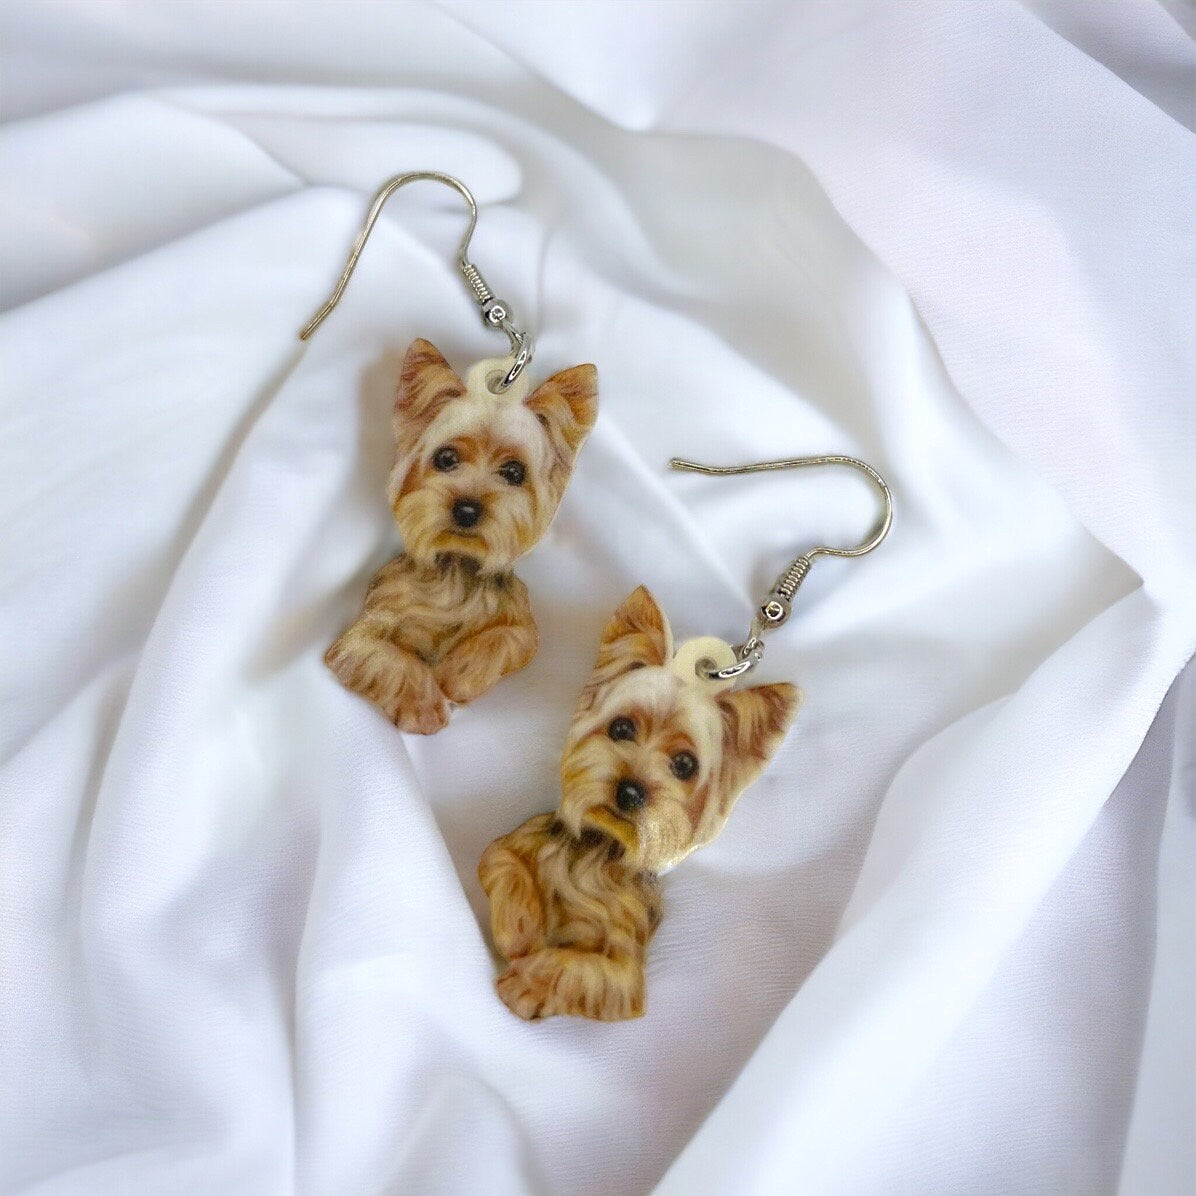 Yorkie Earrings - Dog Earrings, Yorkie Mom, Dog Jewelry, Dog Mom, Yorkie Jewelry, Dog Accessories, Puppy Earrings, Yorkie Accessories